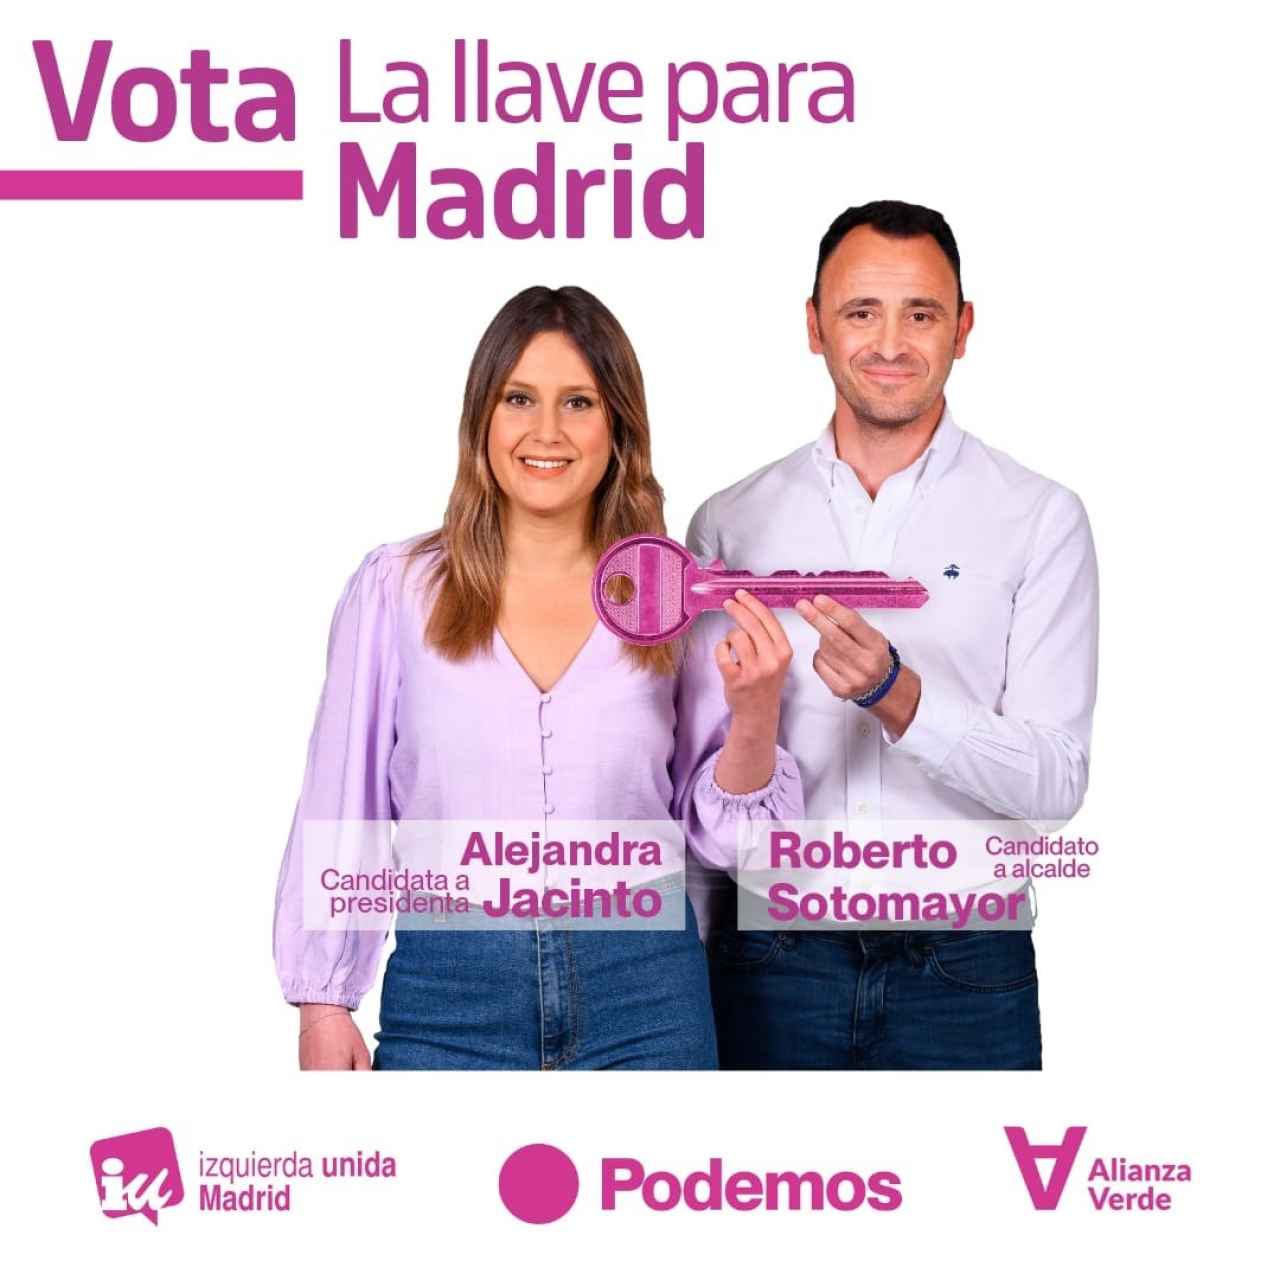 'La llave para Madrid', lema del arranque de campaña de Podemos.